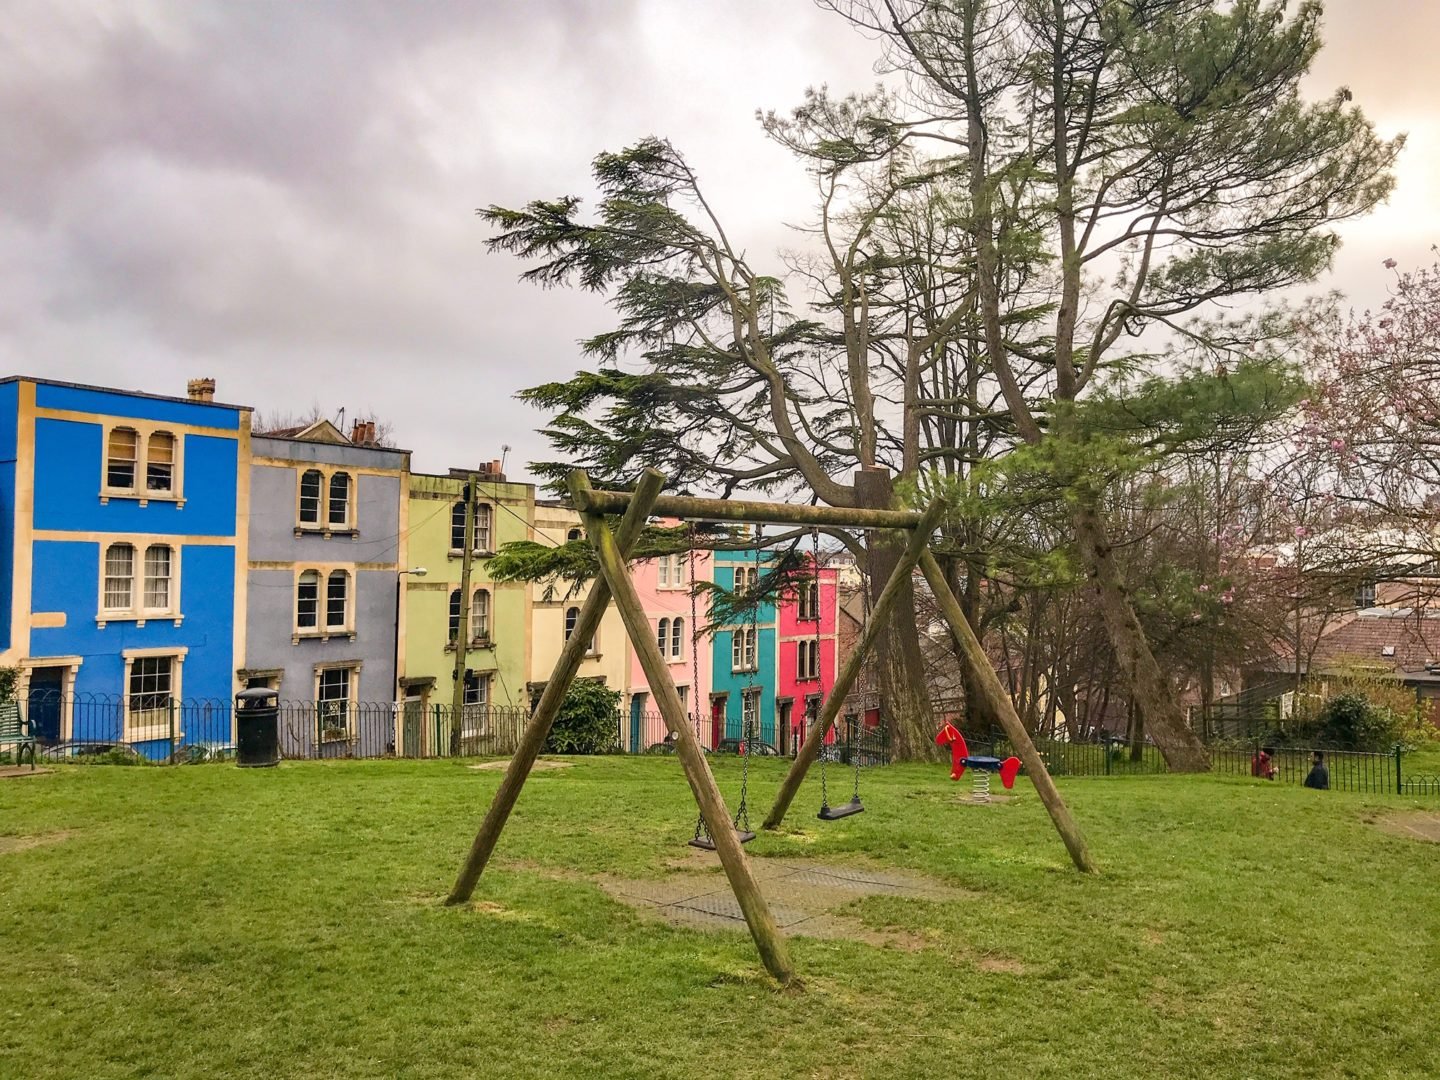 Montpelier park, multi-coloured Bristol buildings